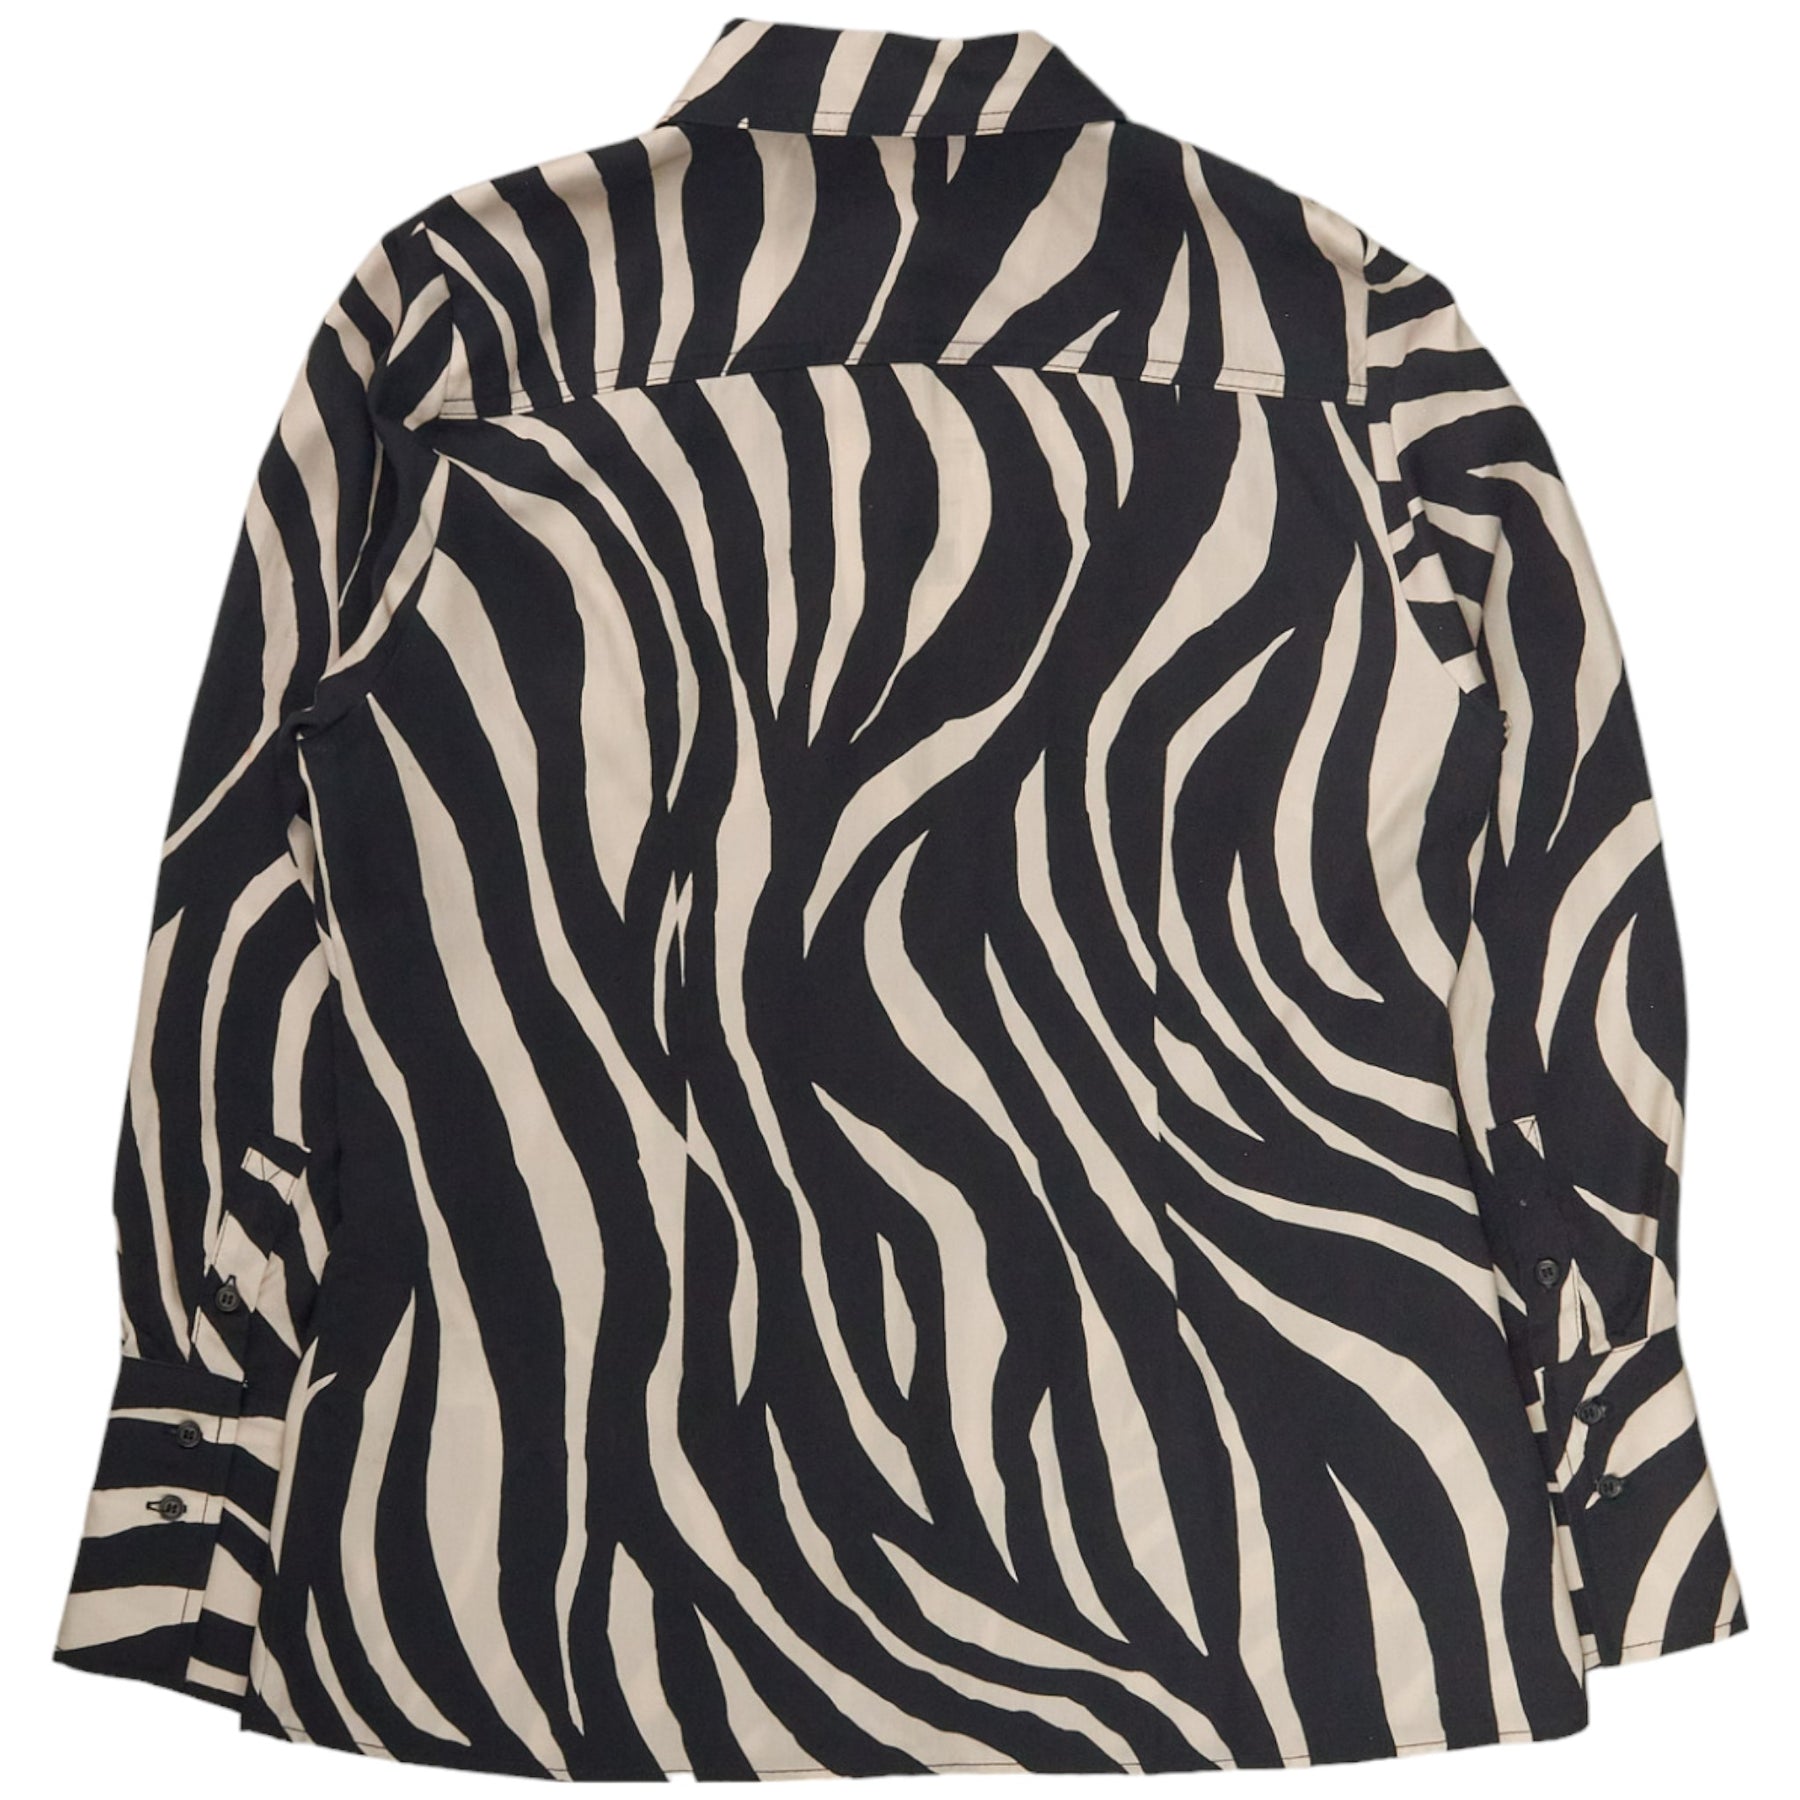 Baukjem Black Zebra Kamilah Shirt